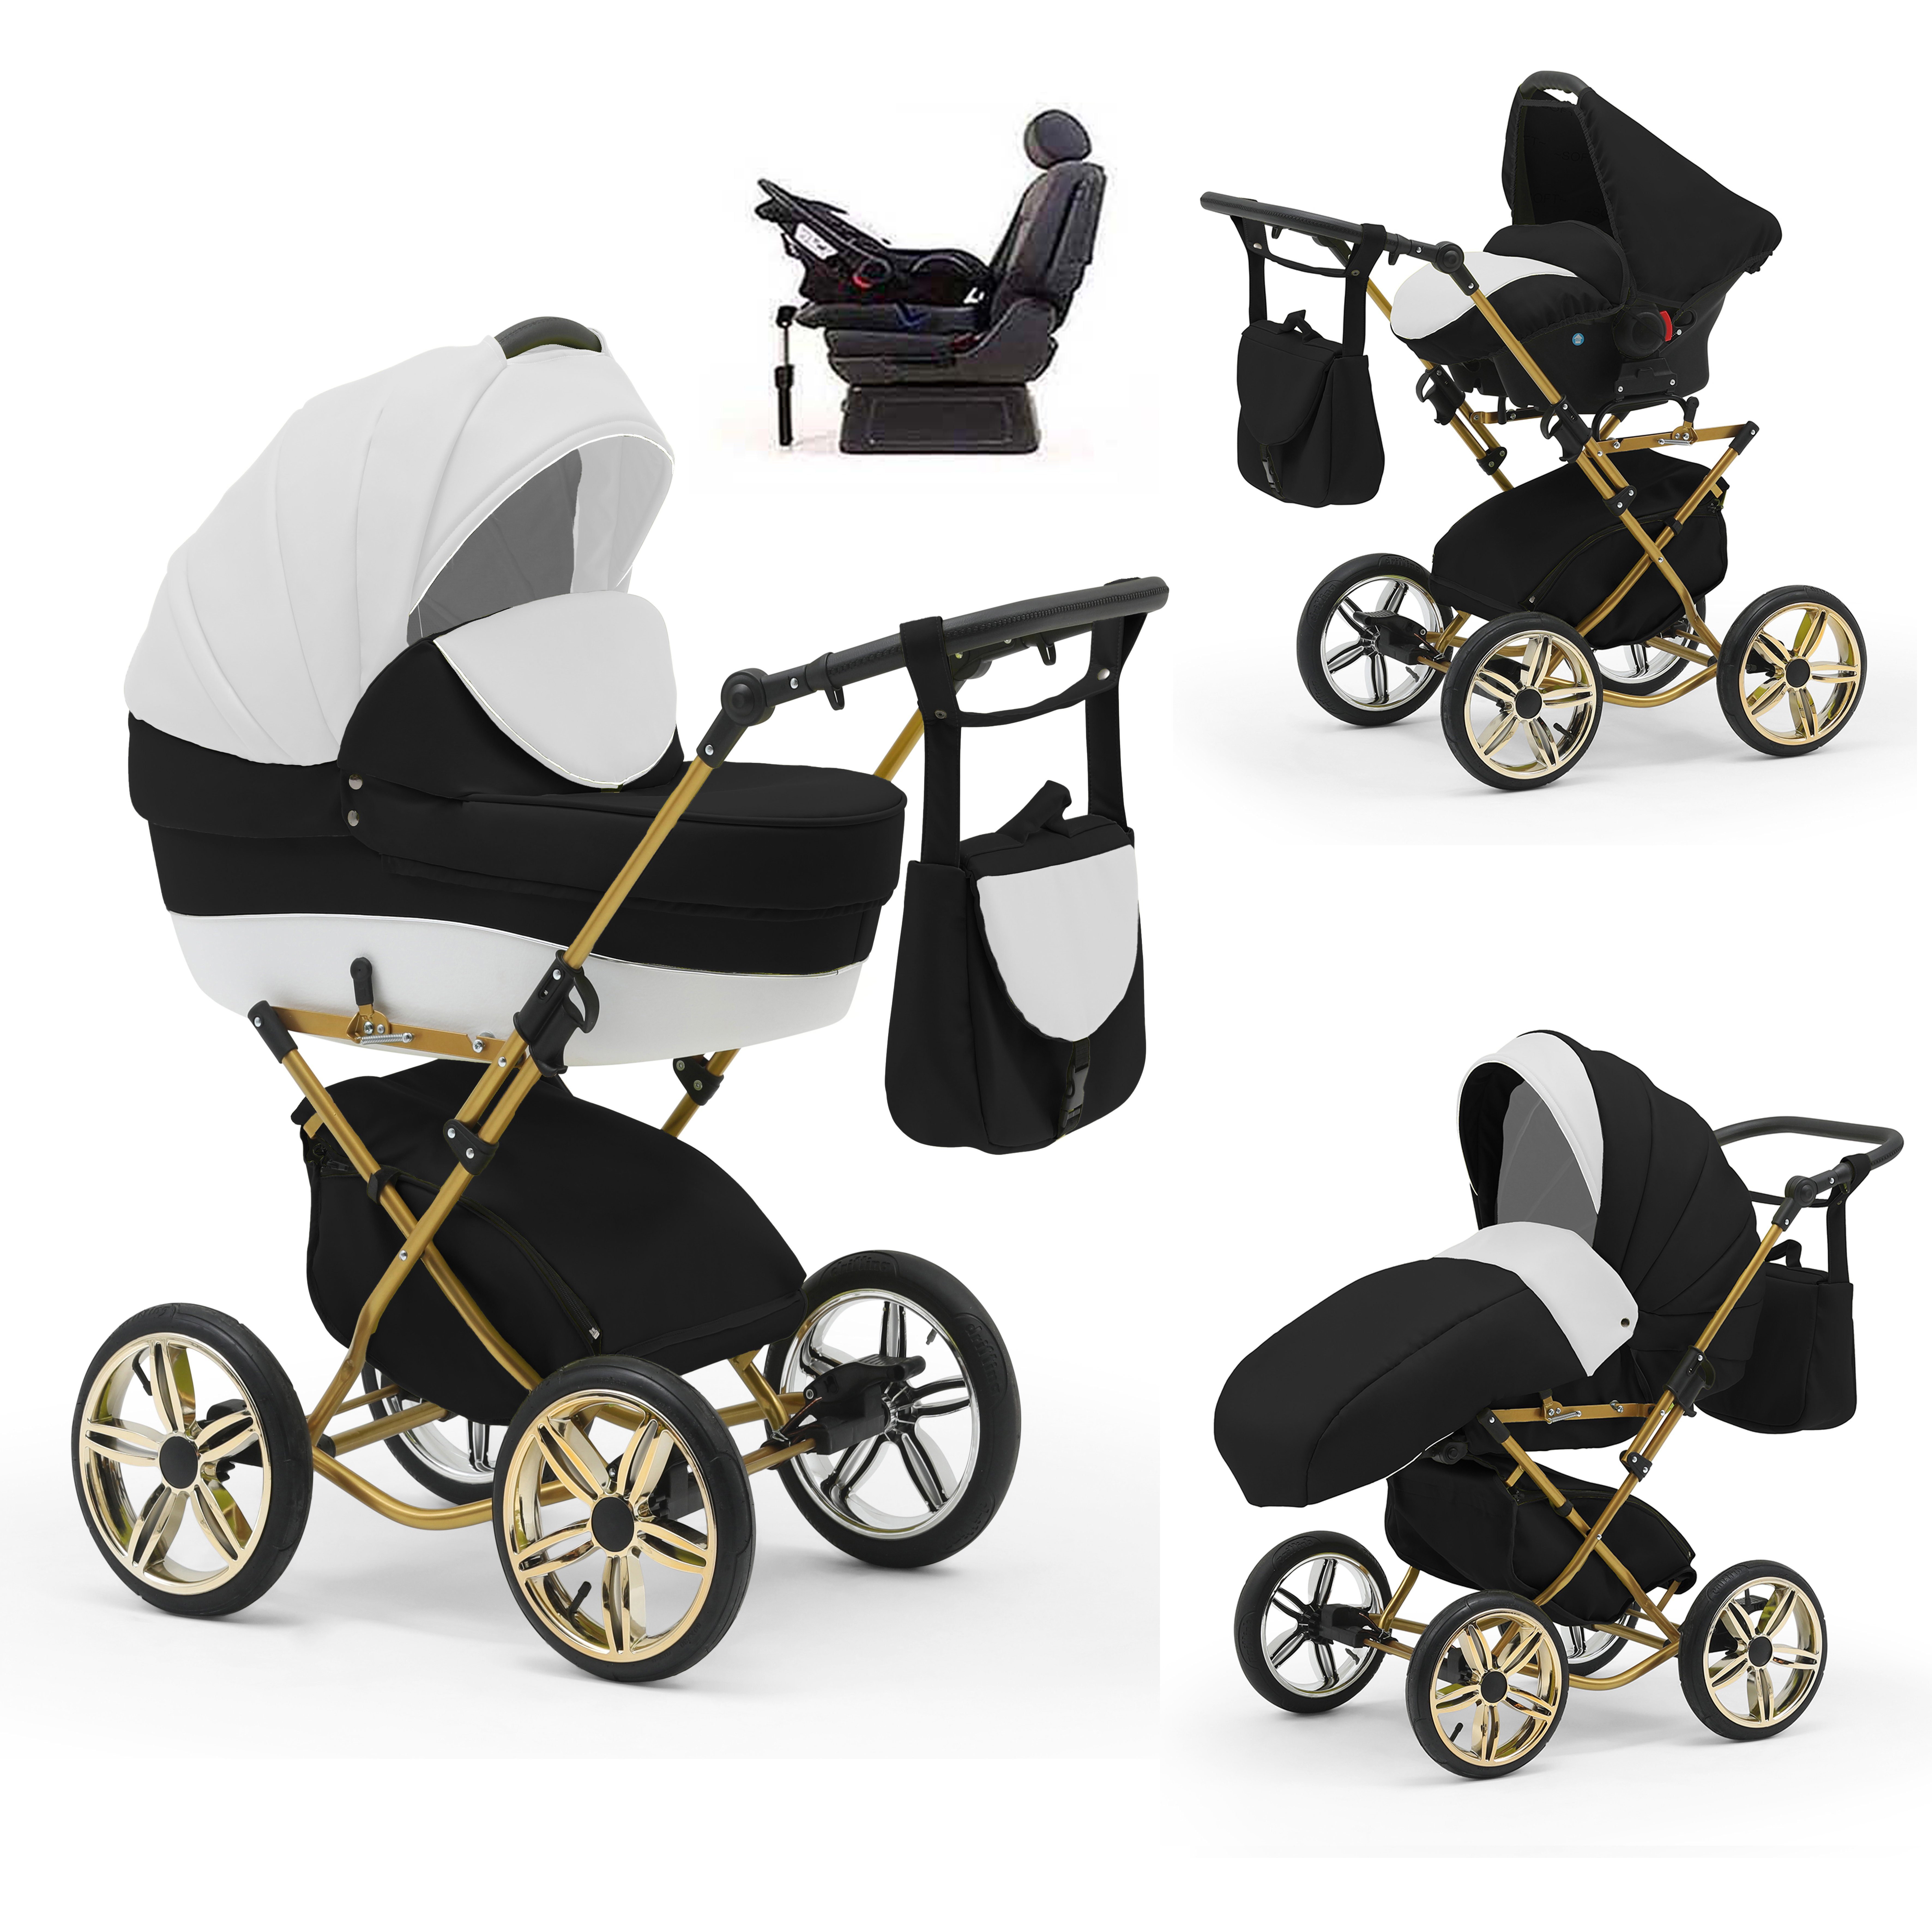 babies-on-wheels Kombi-Kinderwagen Sorento 4 in 1 inkl. Autositz und Iso Base - 14 Teile - in 10 Designs Weiß-Schwarz-Weiß